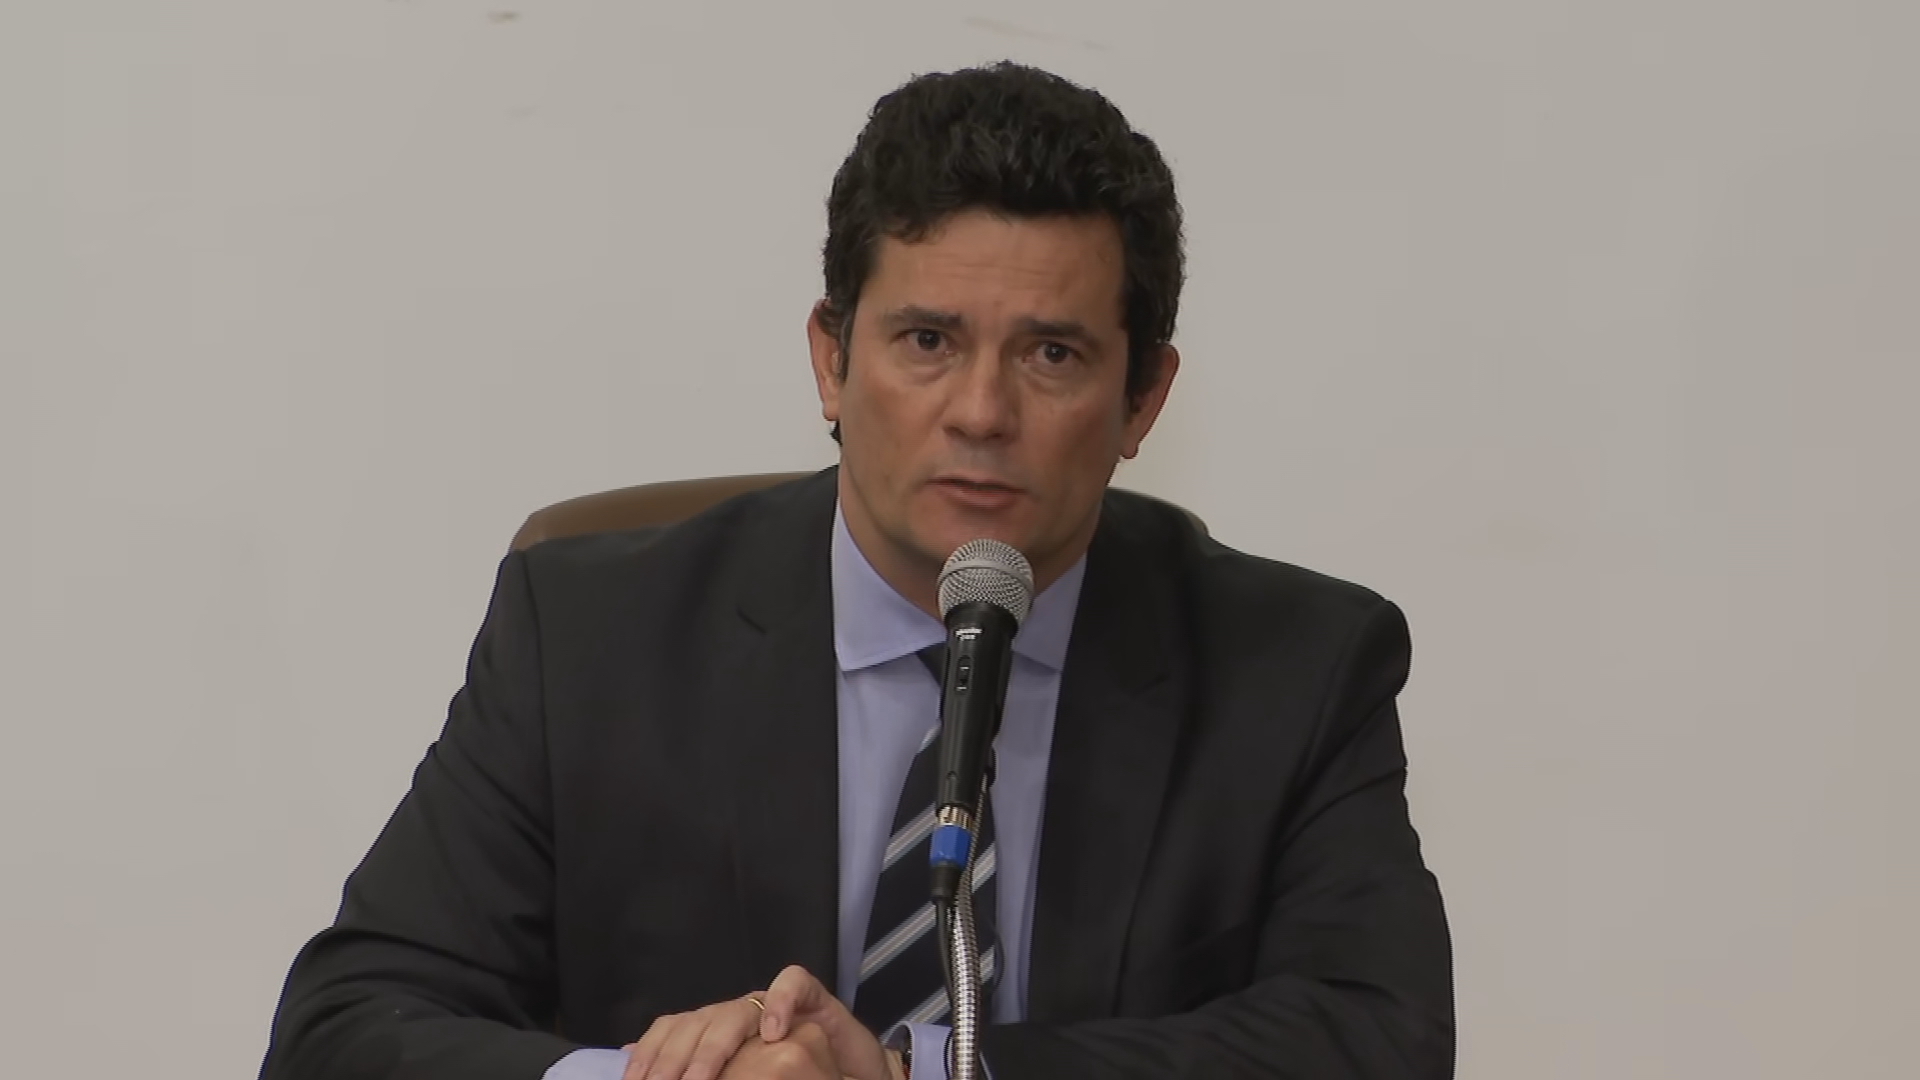 Moro pediu demissão após Bolsonaro forçar troca no comando da PF